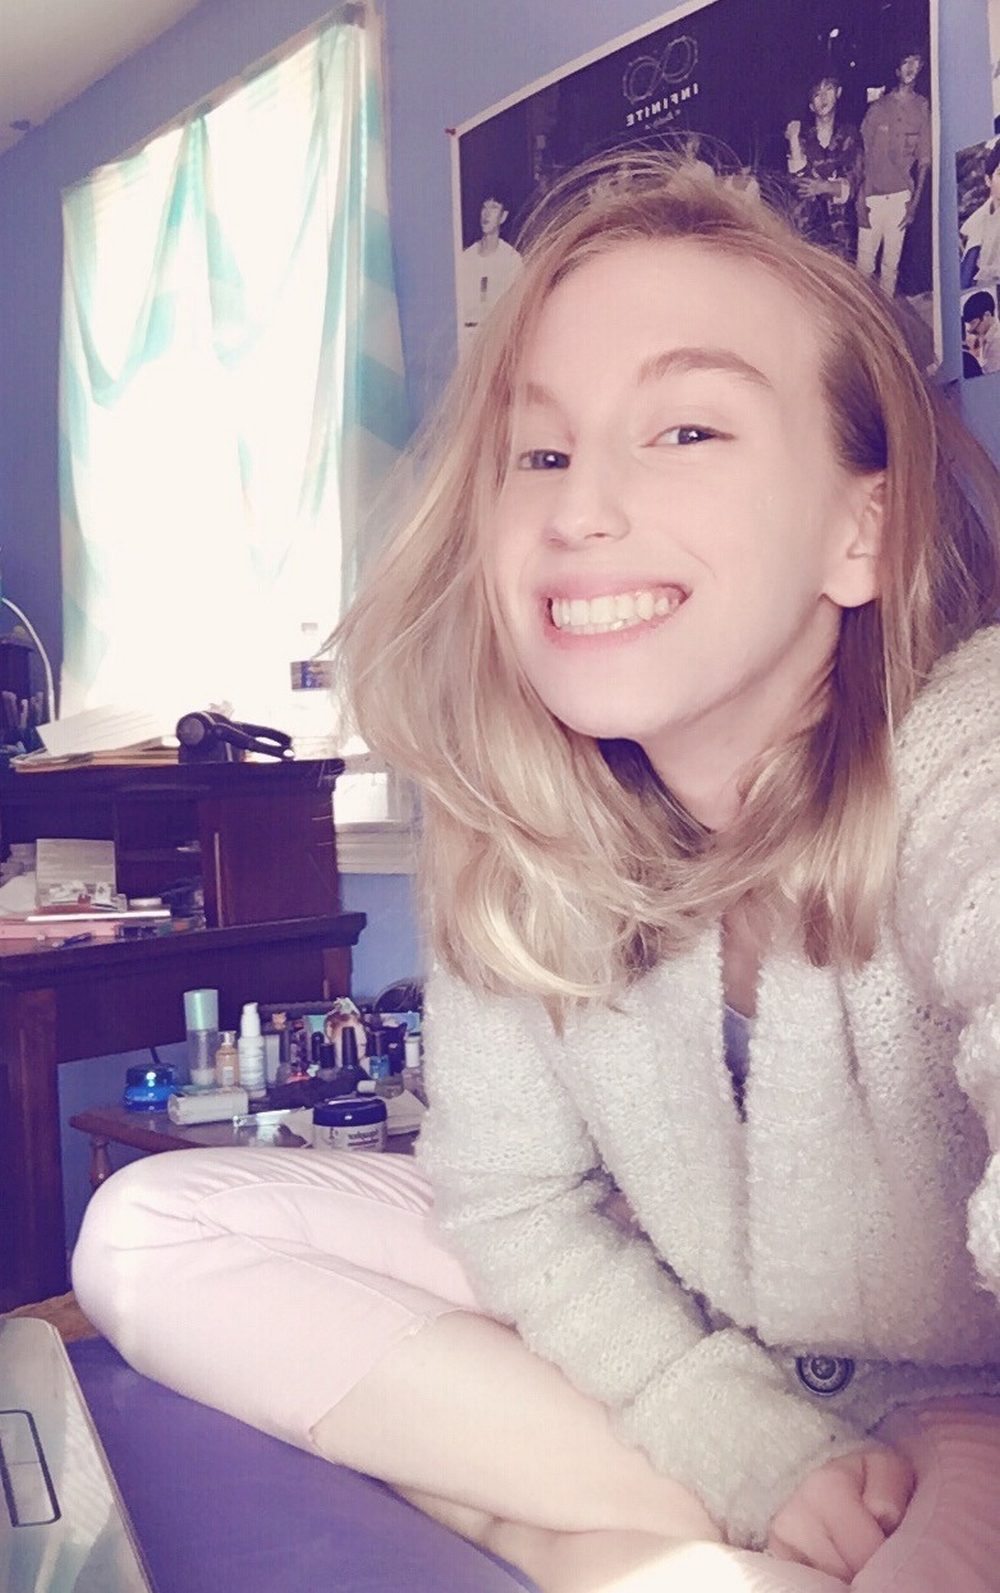 19-ти летняя блондинка показывает розовую киску перед камерой 3 фото